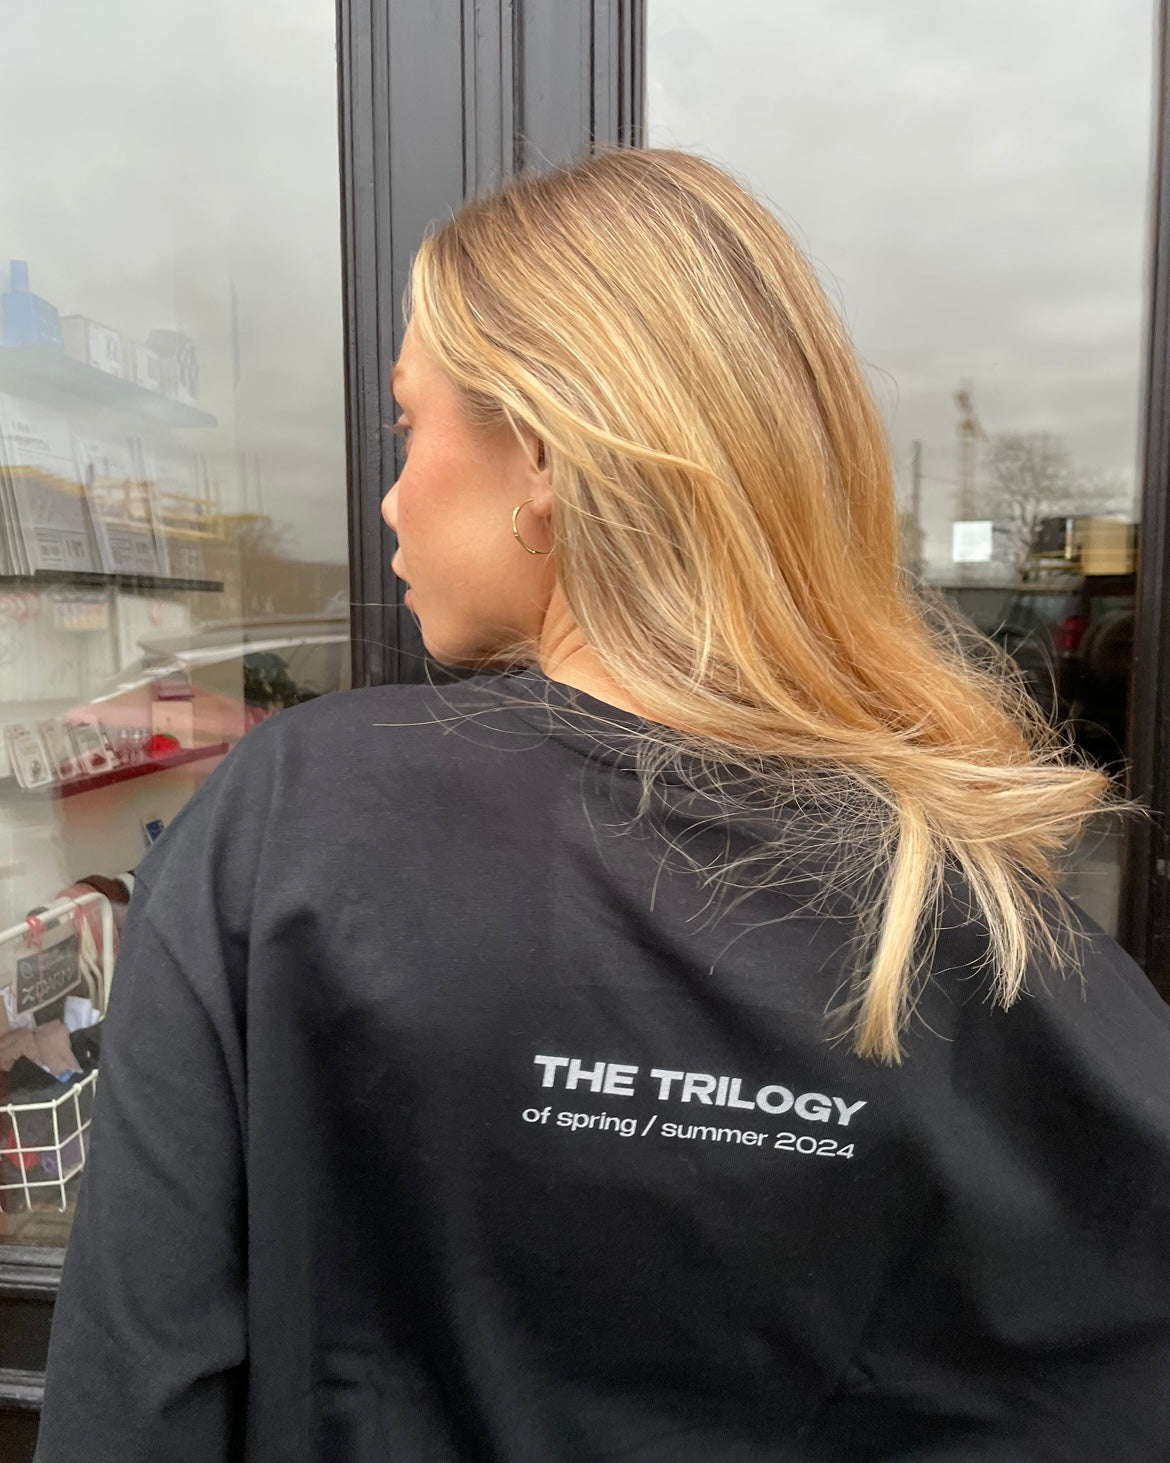 + Trilogy Team T-shirt SS24